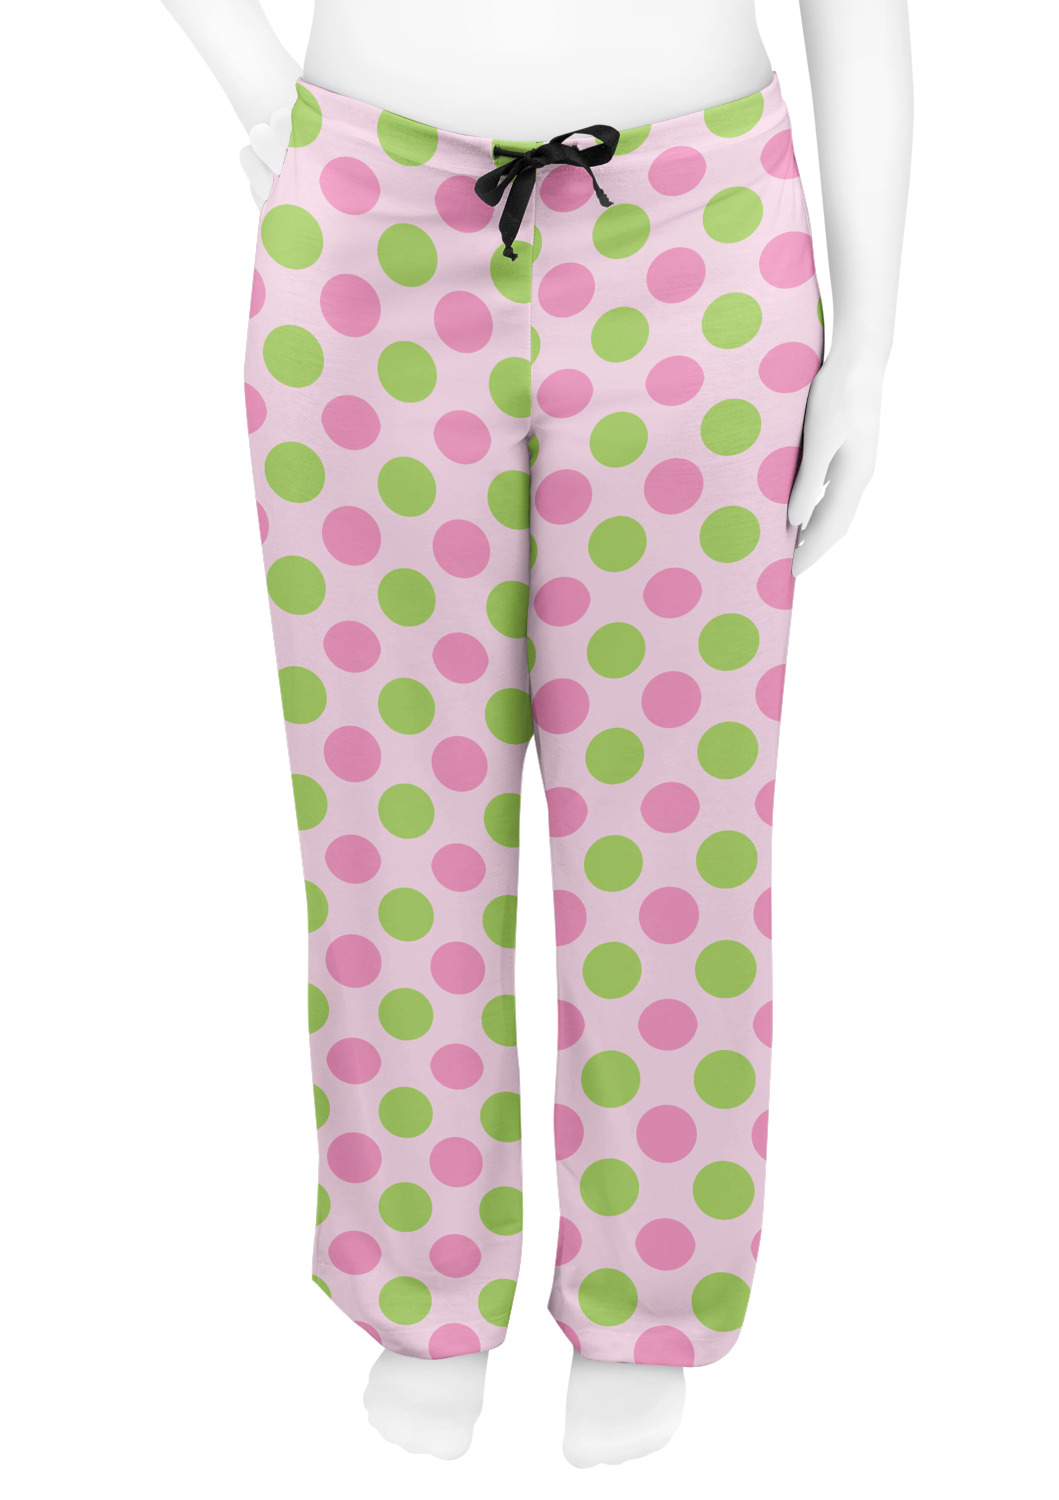 Custom Pink & Green Dots Womens Pajama Pants | YouCustomizeIt